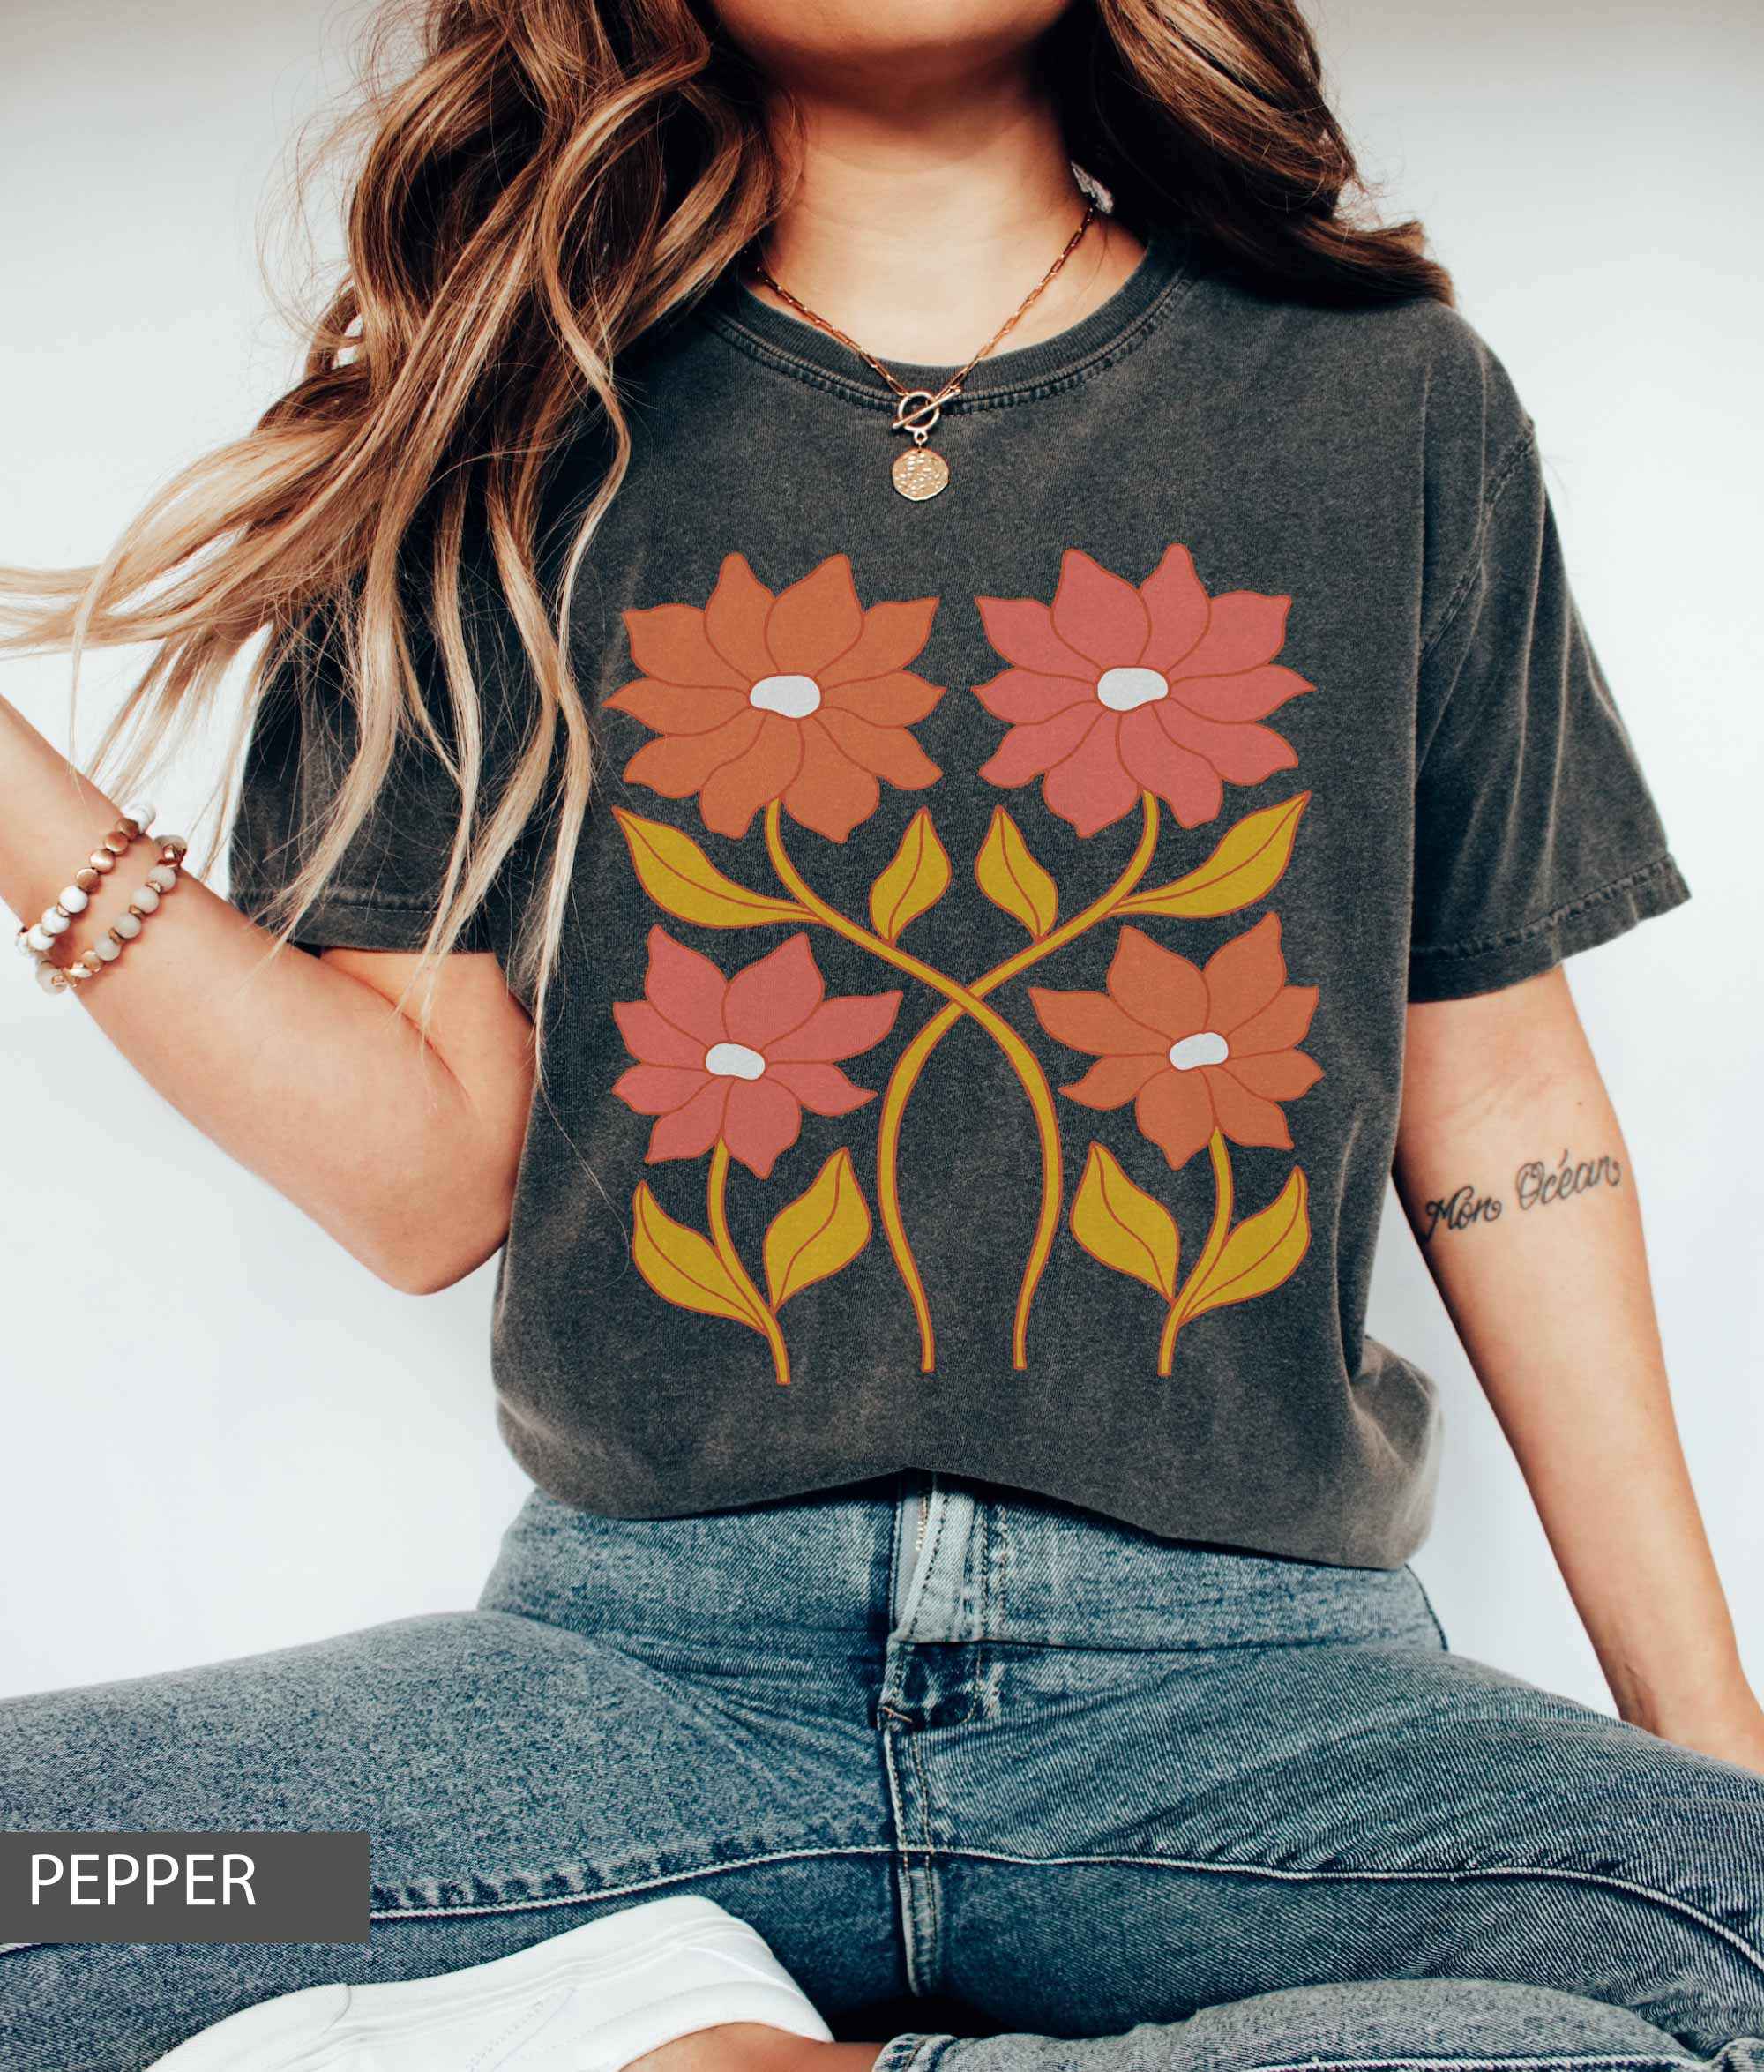 4 Sunflowers T-Shirt - Lightmind Design